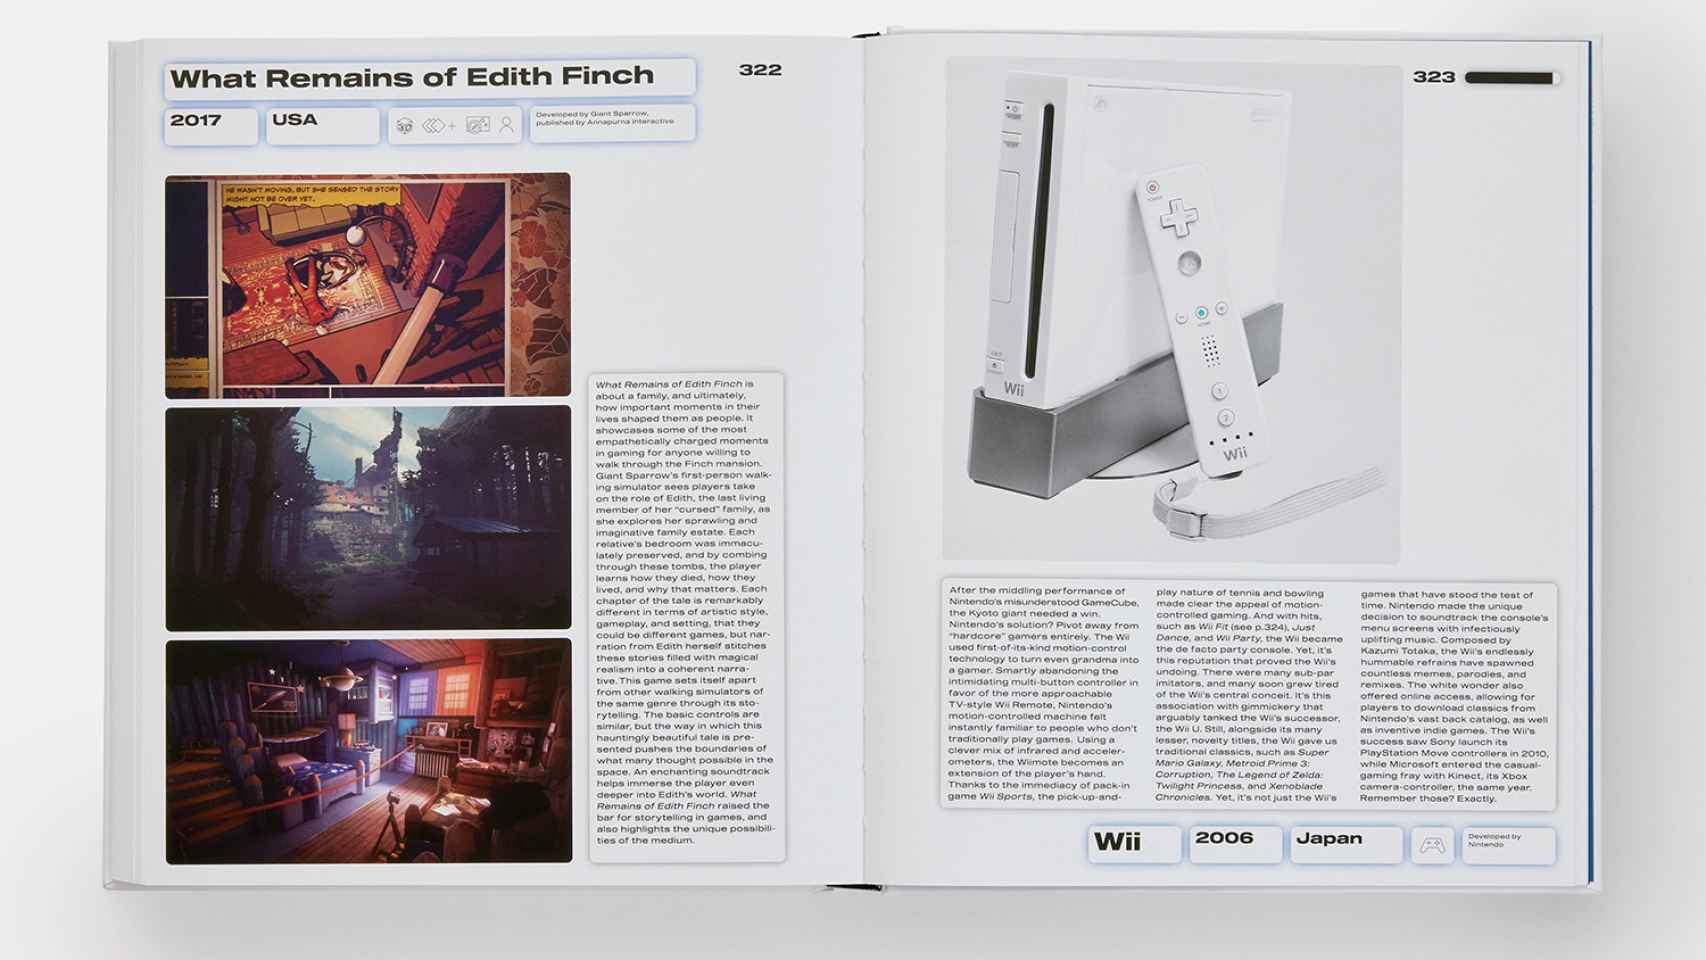 Doble página dedicada al juego 'What Remains of Edith Finch' y a la consola Wii de Nintendo.